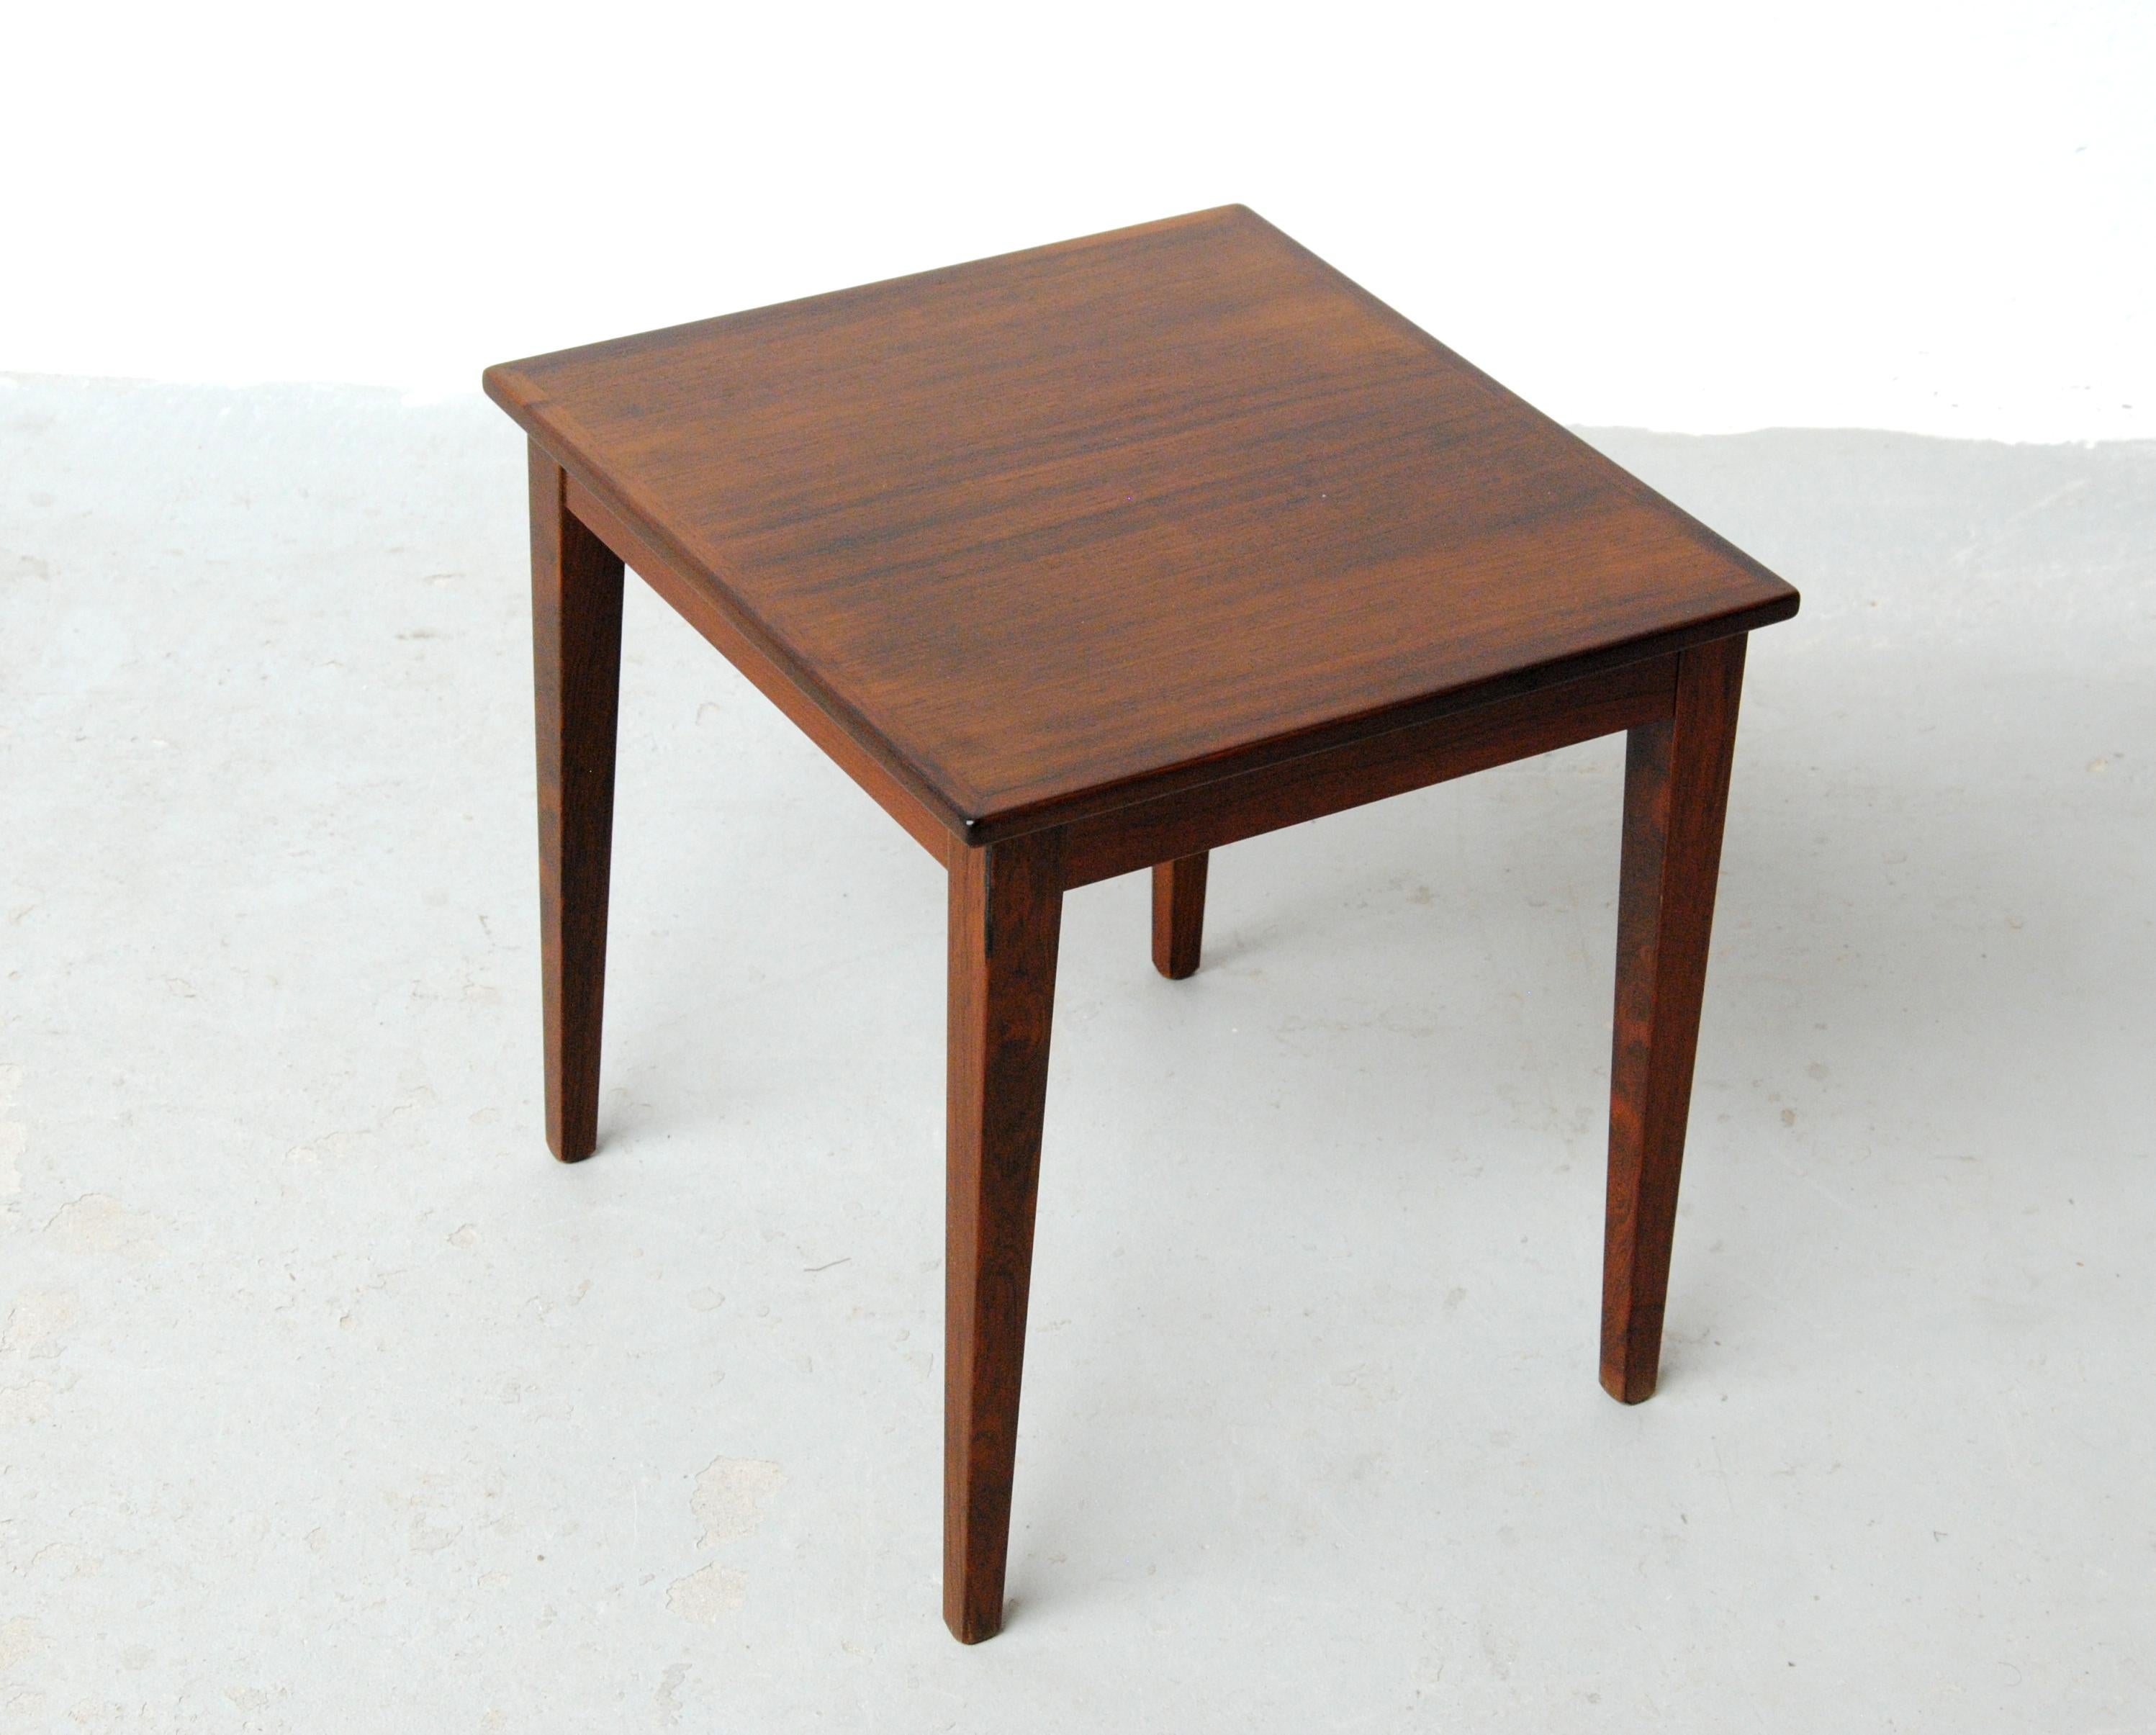 table d'appoint danoise en palissandre des années 1960 entièrement restaurée par Kvalitet Form Funktion.

Petite table d'appoint danoise qui s'adapte facilement à l'endroit et au moment où vous en avez besoin dans votre maison, et qui est facile à